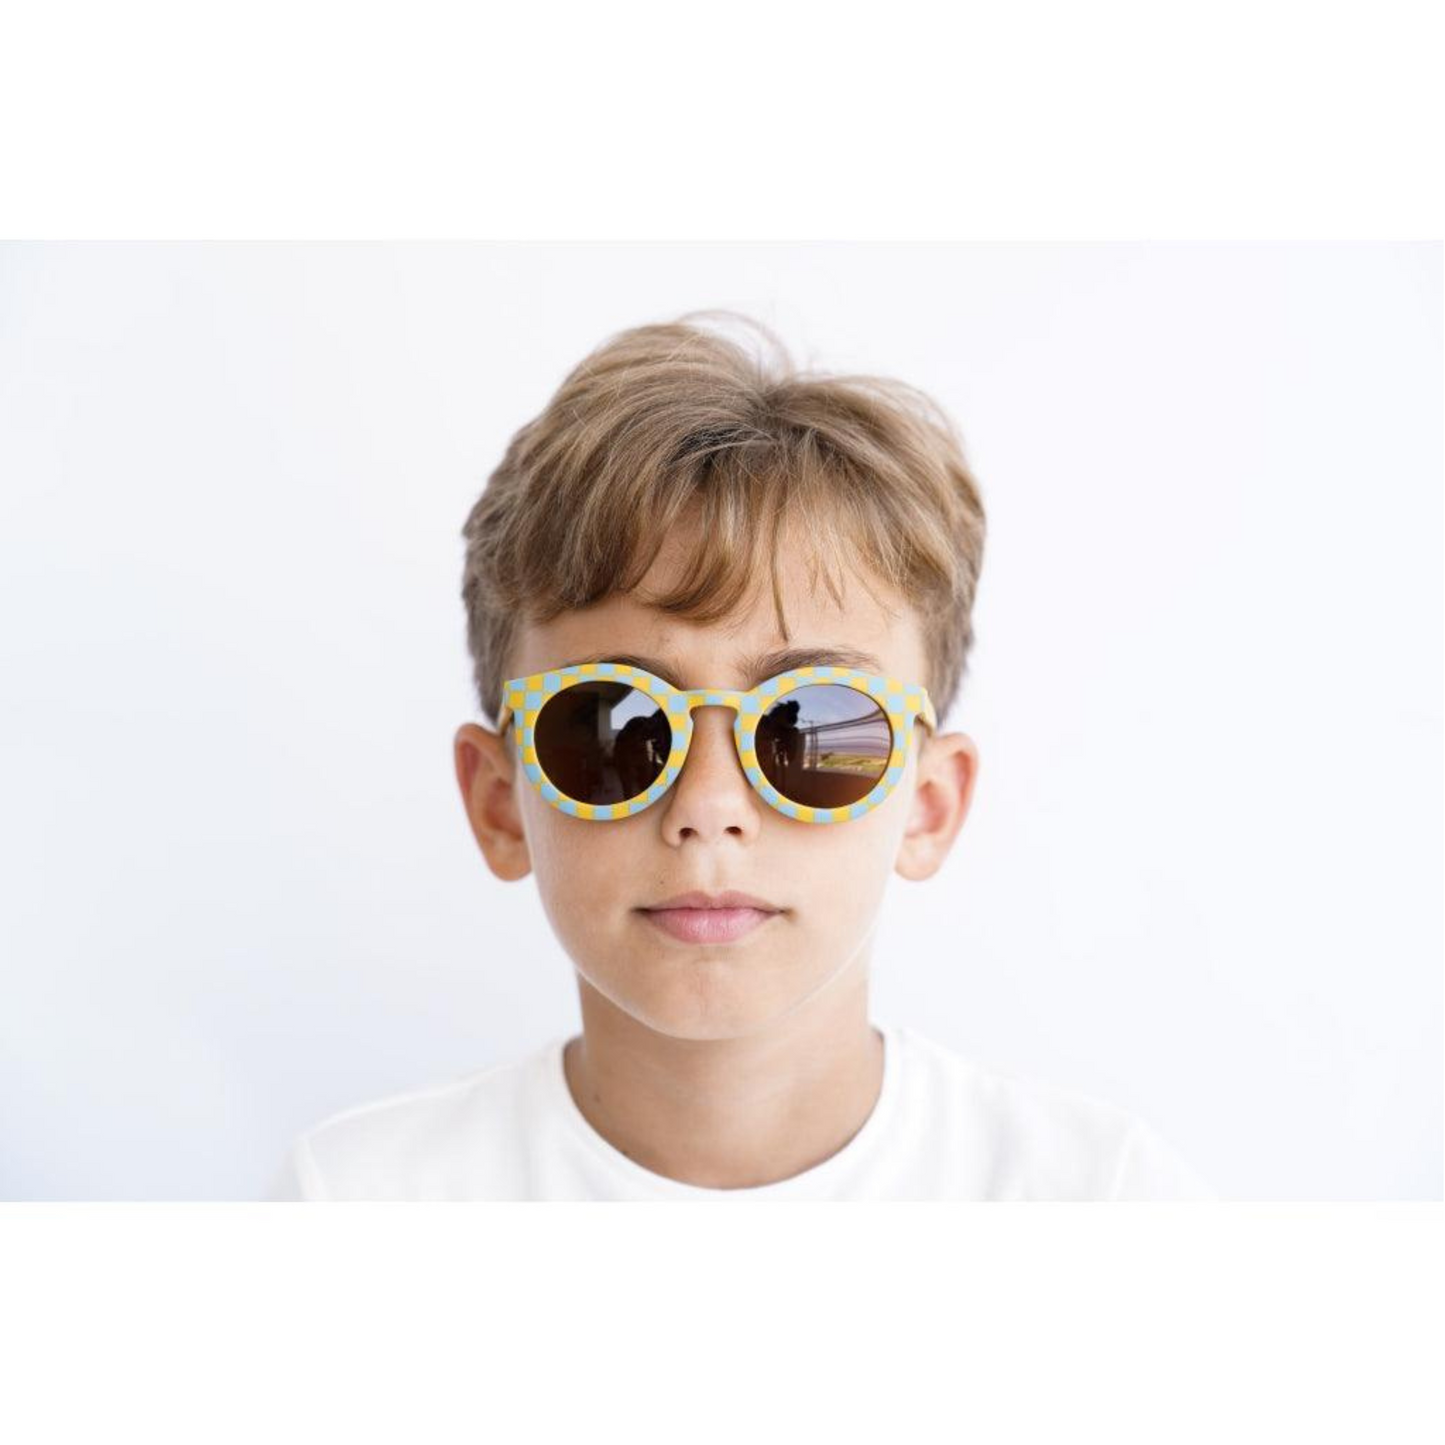 Classic Sustainable Children's Sunglasses in Laguna and Wheat Checks